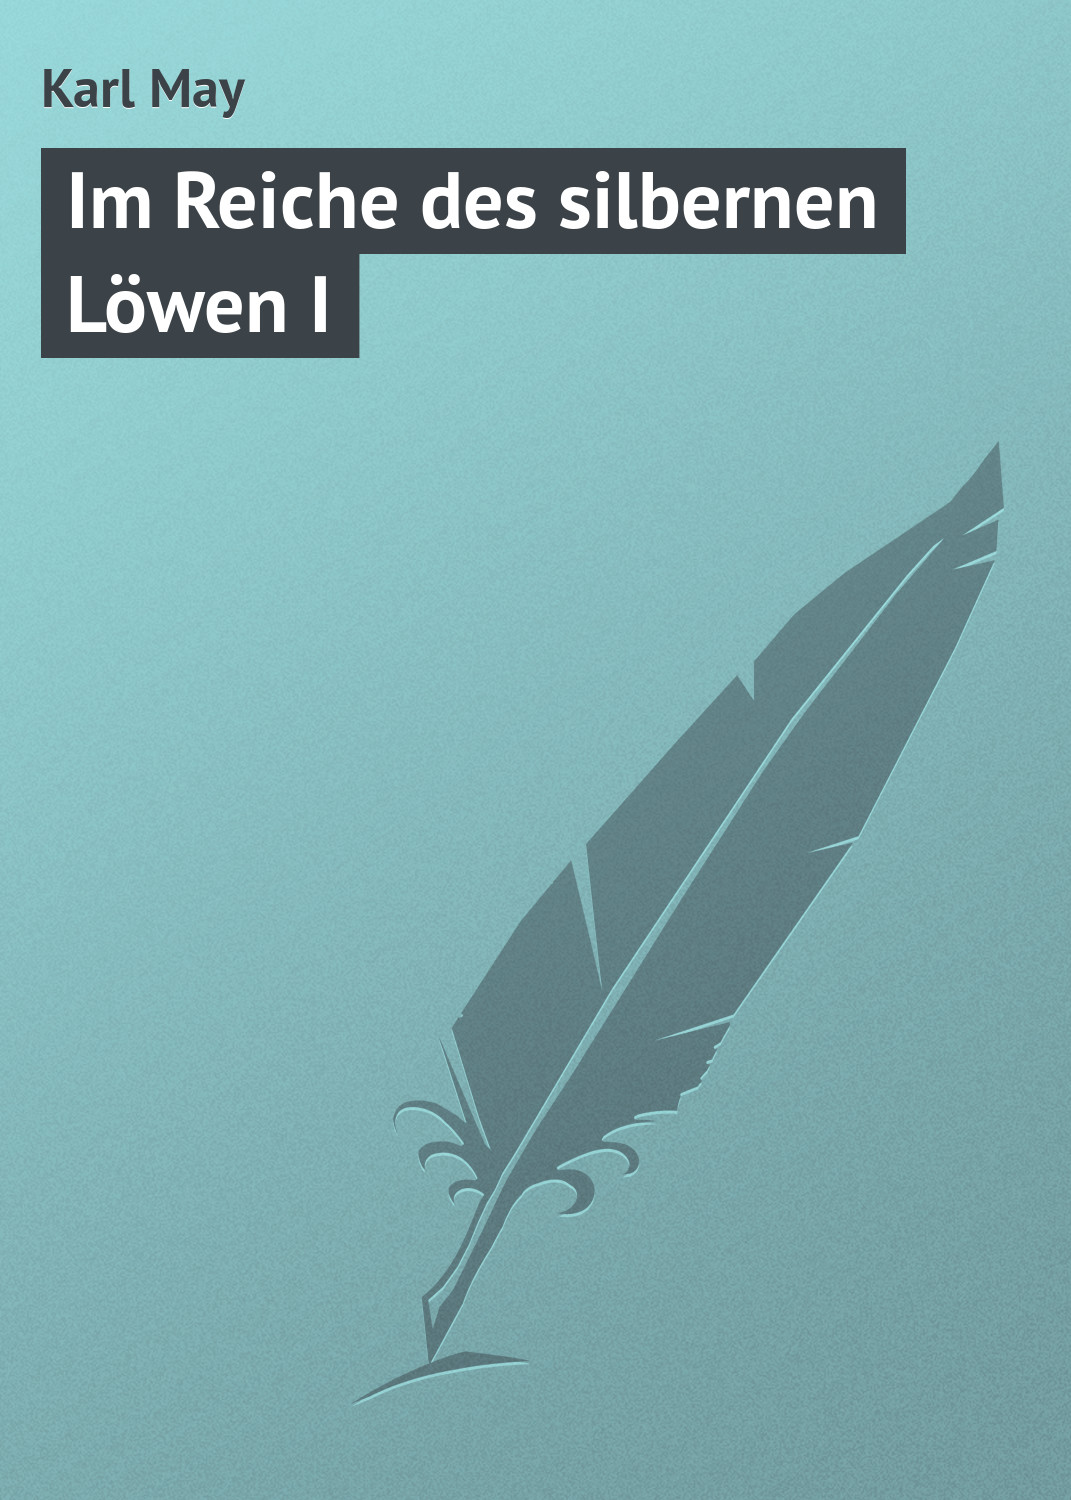 Книга Im Reiche des silbernen Löwen I из серии , созданная Karl May, может относится к жанру Зарубежная старинная литература, Зарубежная классика. Стоимость электронной книги Im Reiche des silbernen Löwen I с идентификатором 21104366 составляет 5.99 руб.